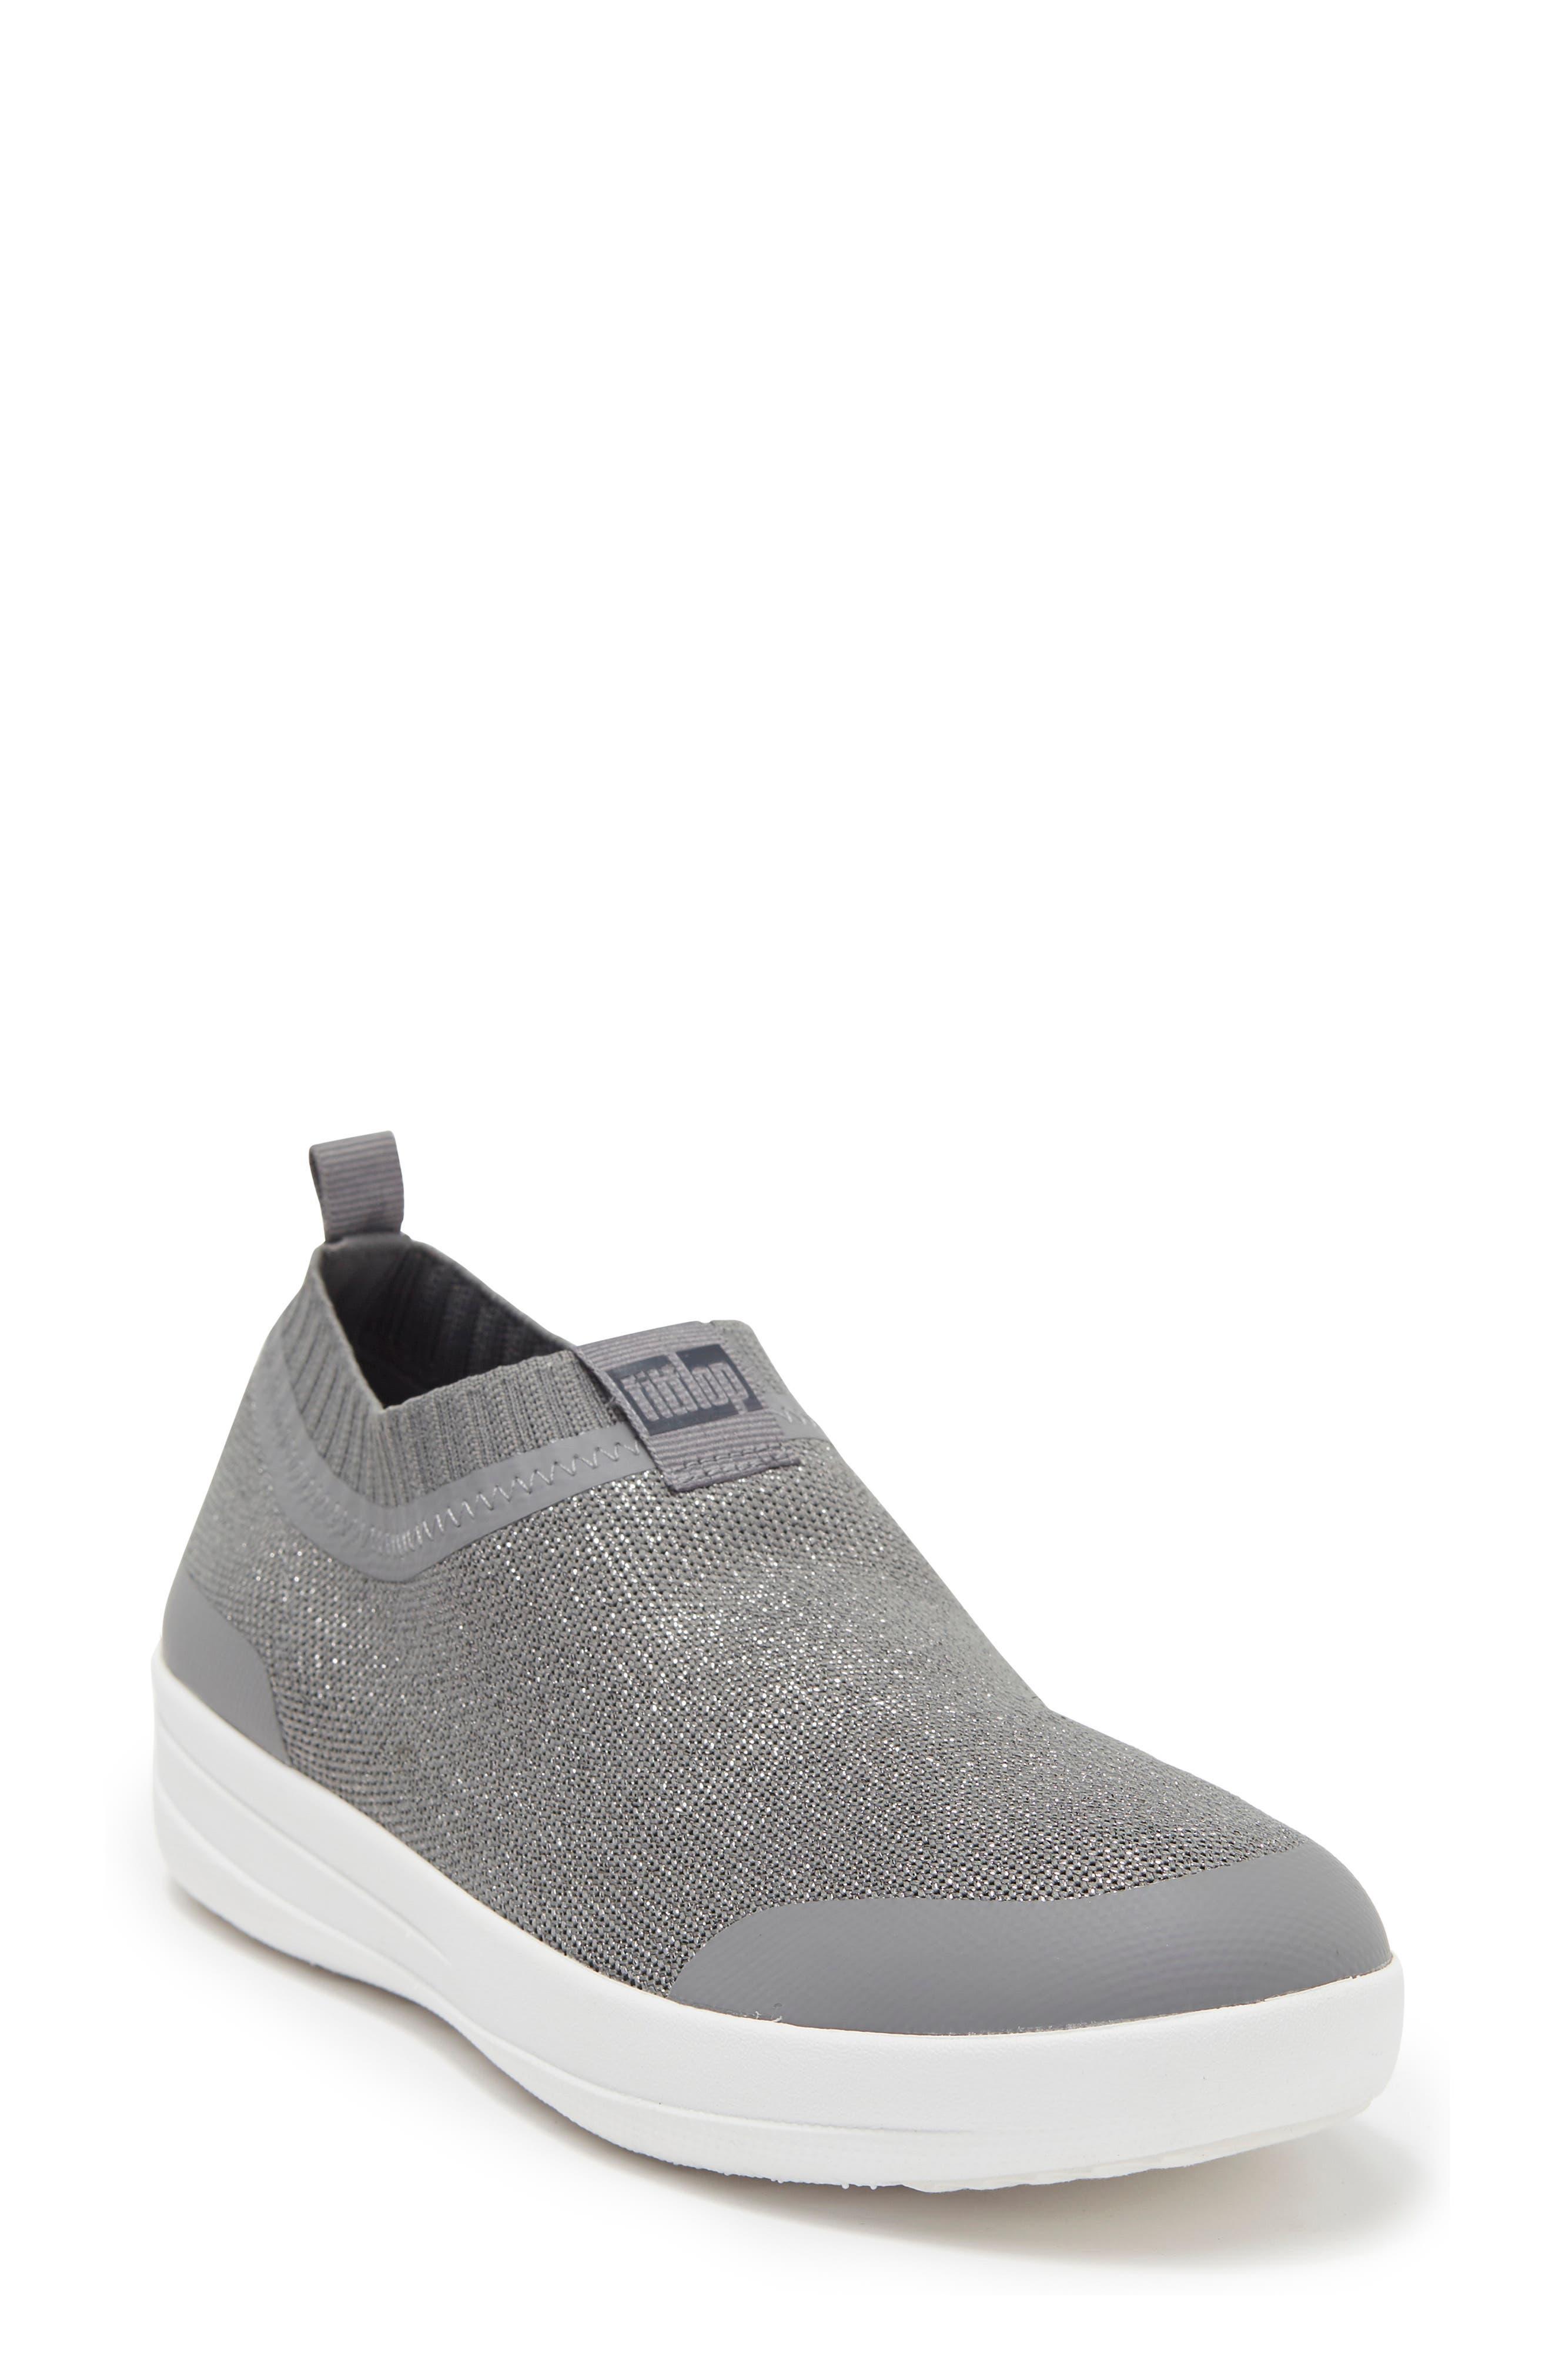 Fitflop Uberknit Slip-on Sneaker in Gray | Lyst